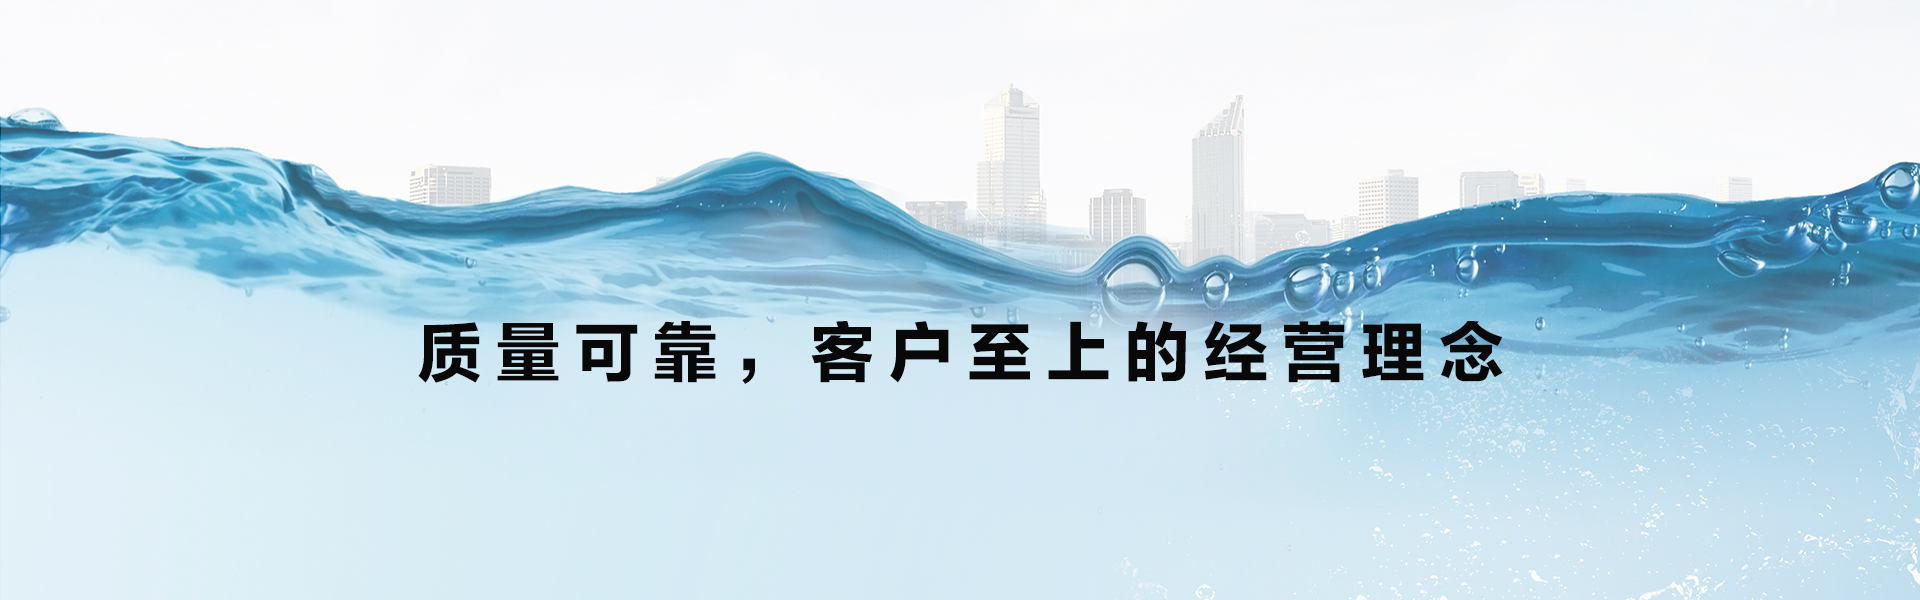 米顿罗全新推出 CARE 维护计划为中国客户提供全方位设备支持